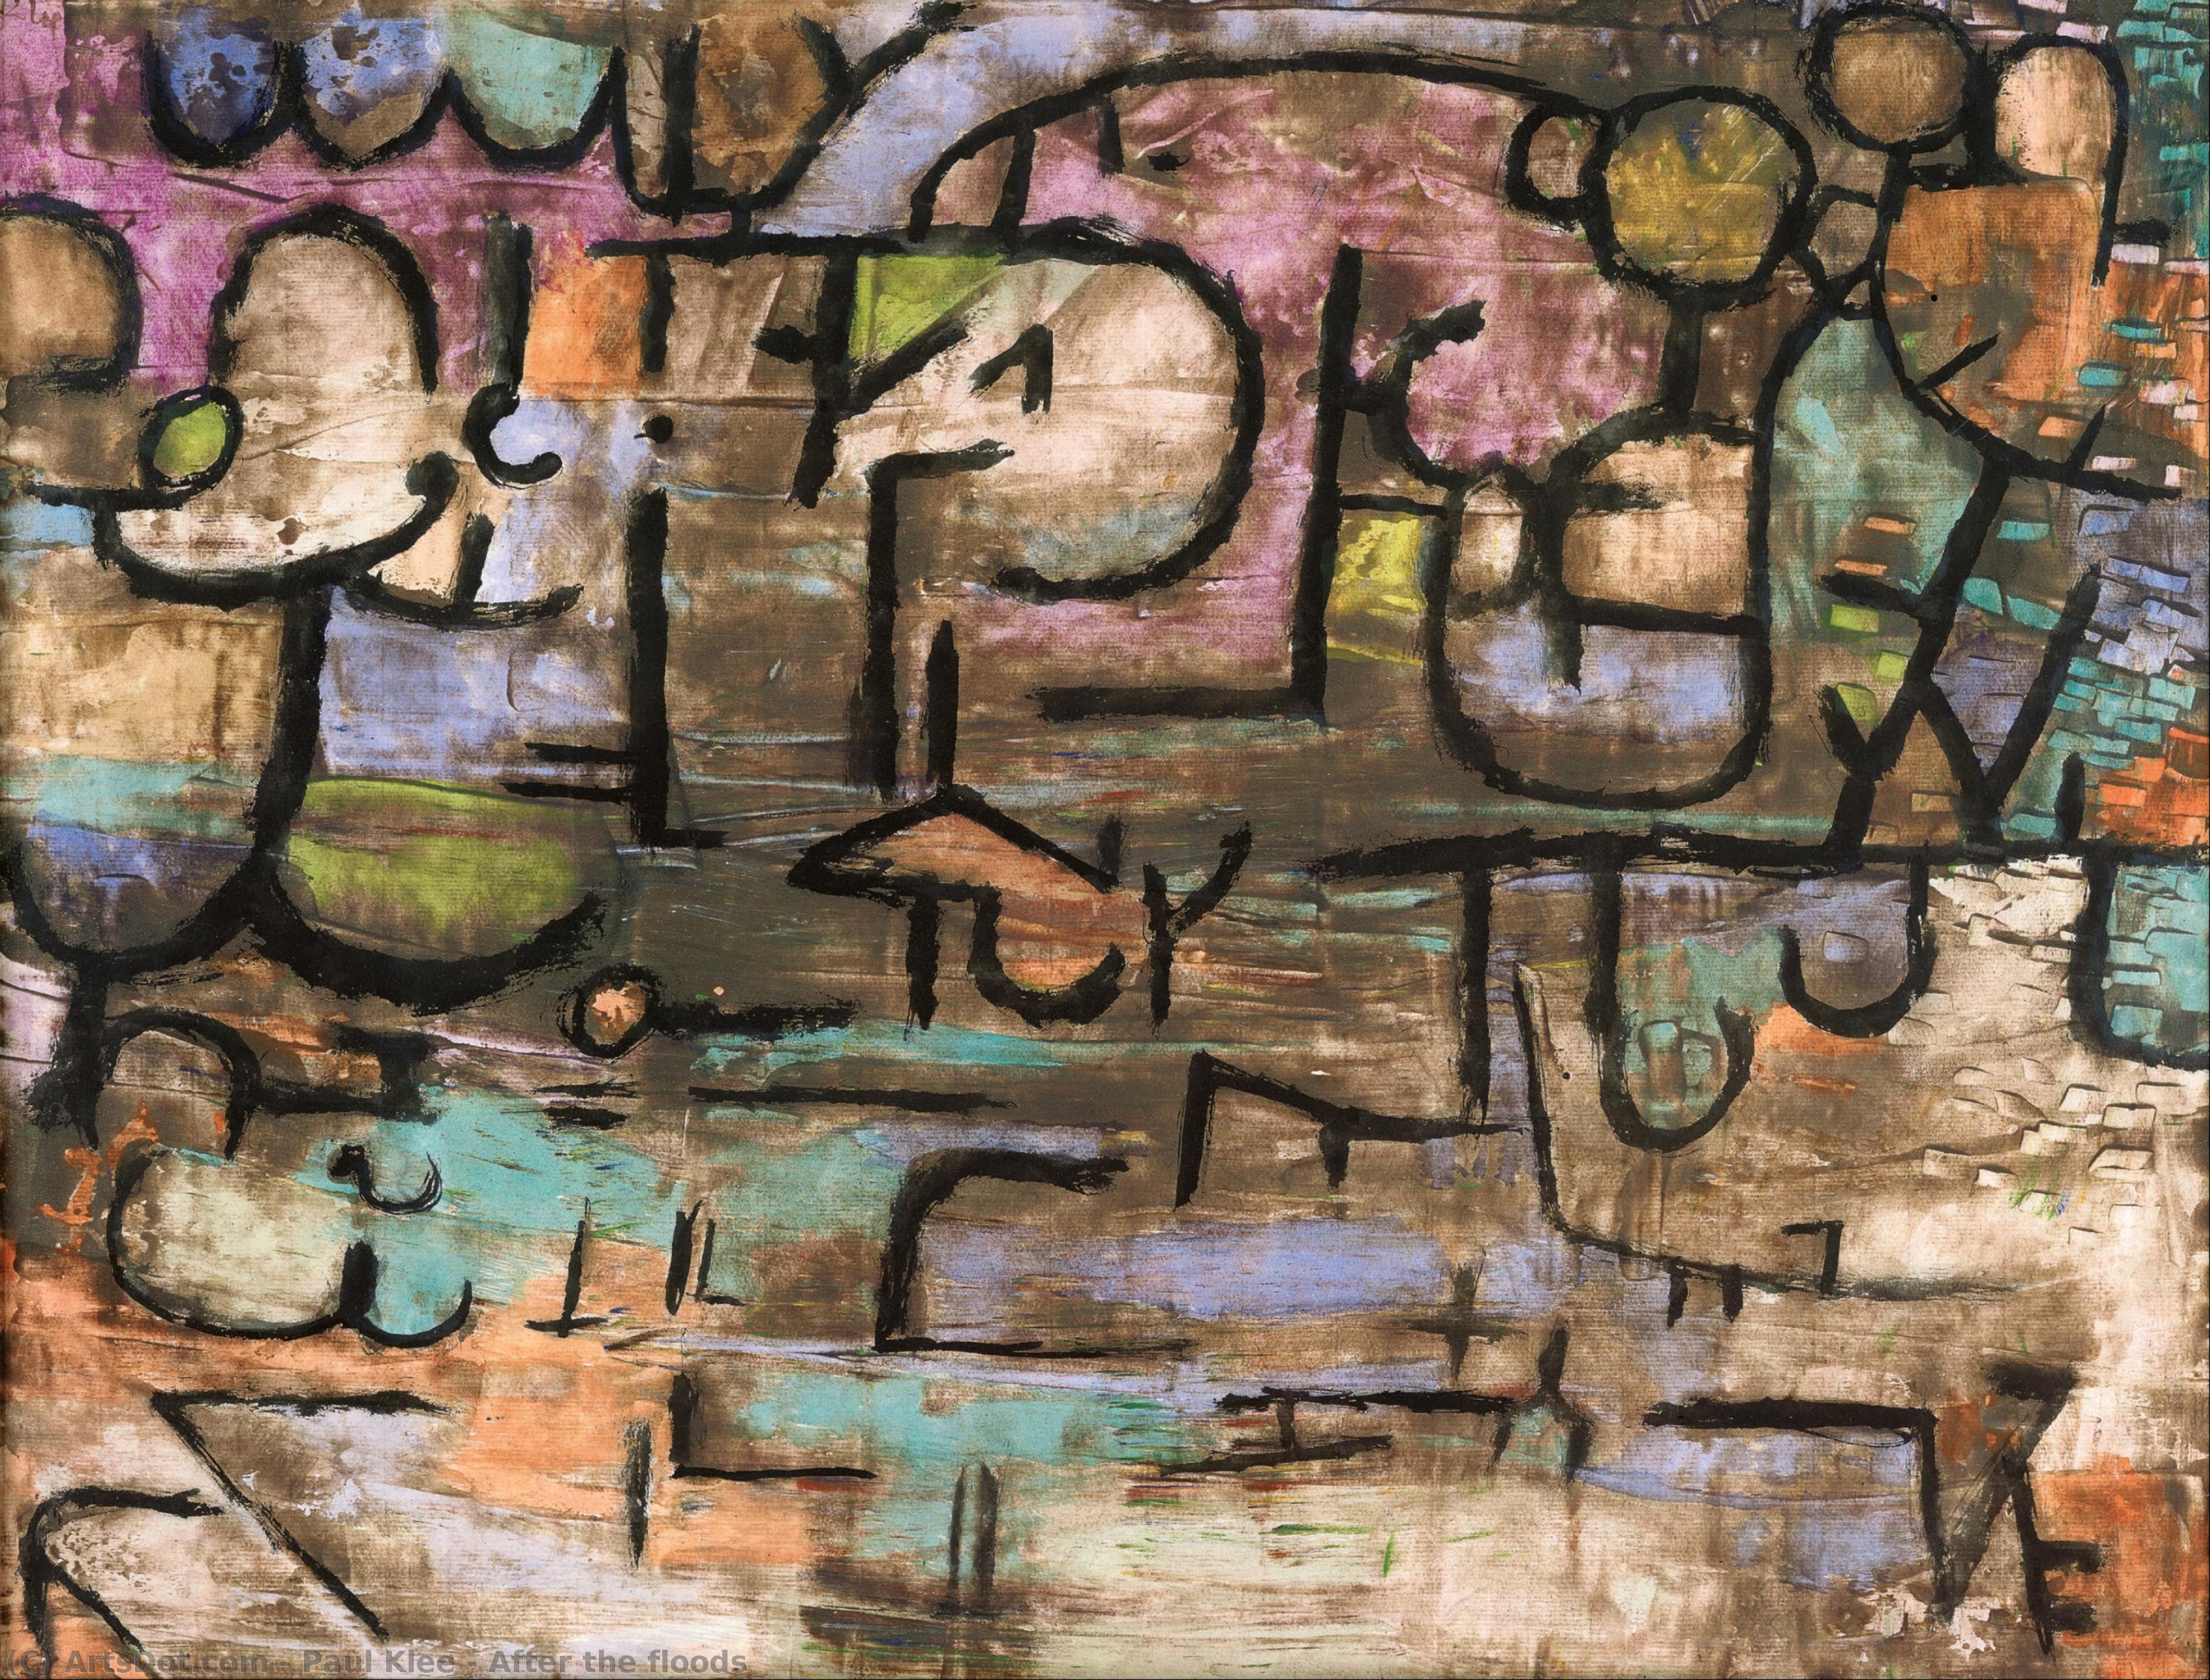 Wikoo.org - موسوعة الفنون الجميلة - اللوحة، العمل الفني Paul Klee - After the floods